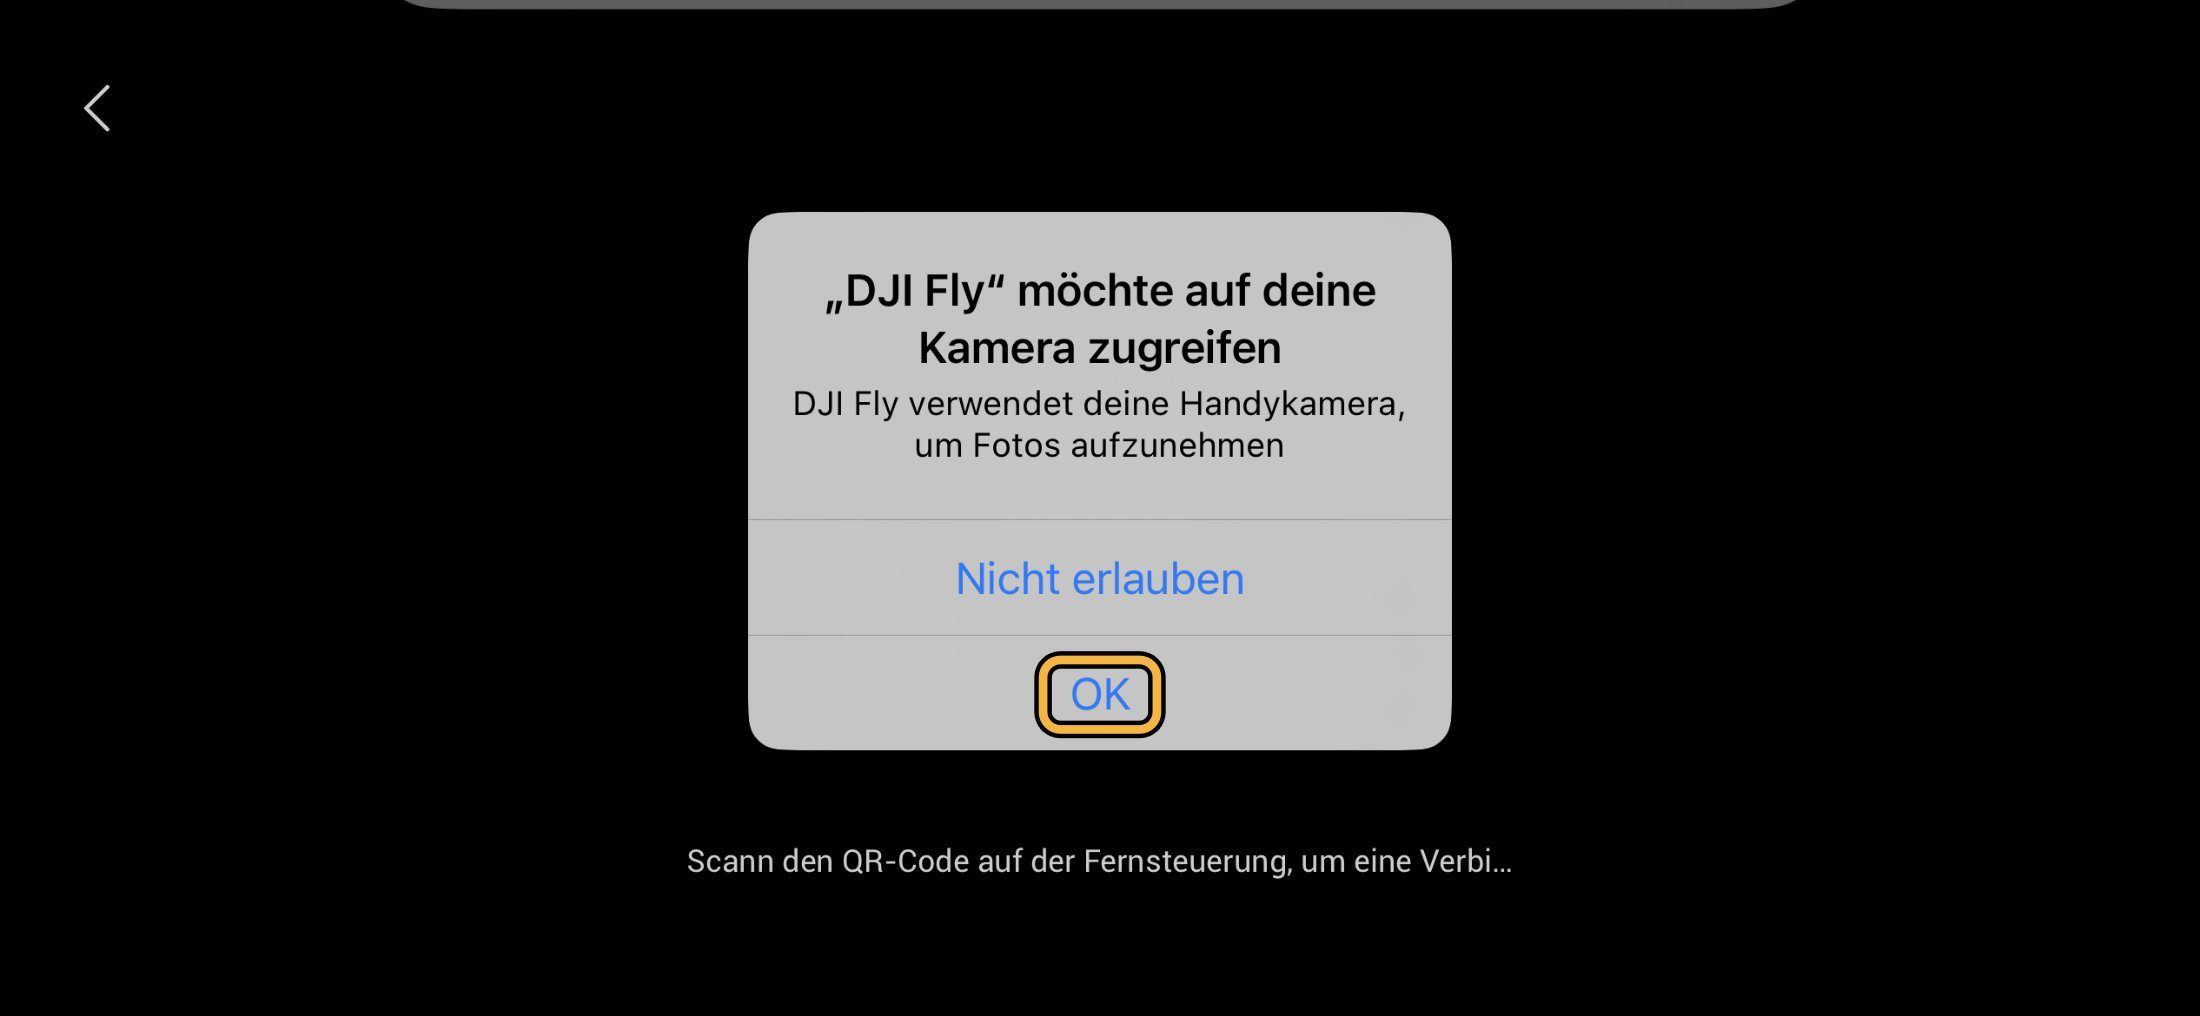 DJI Fly App Kamerazugriff erlauben